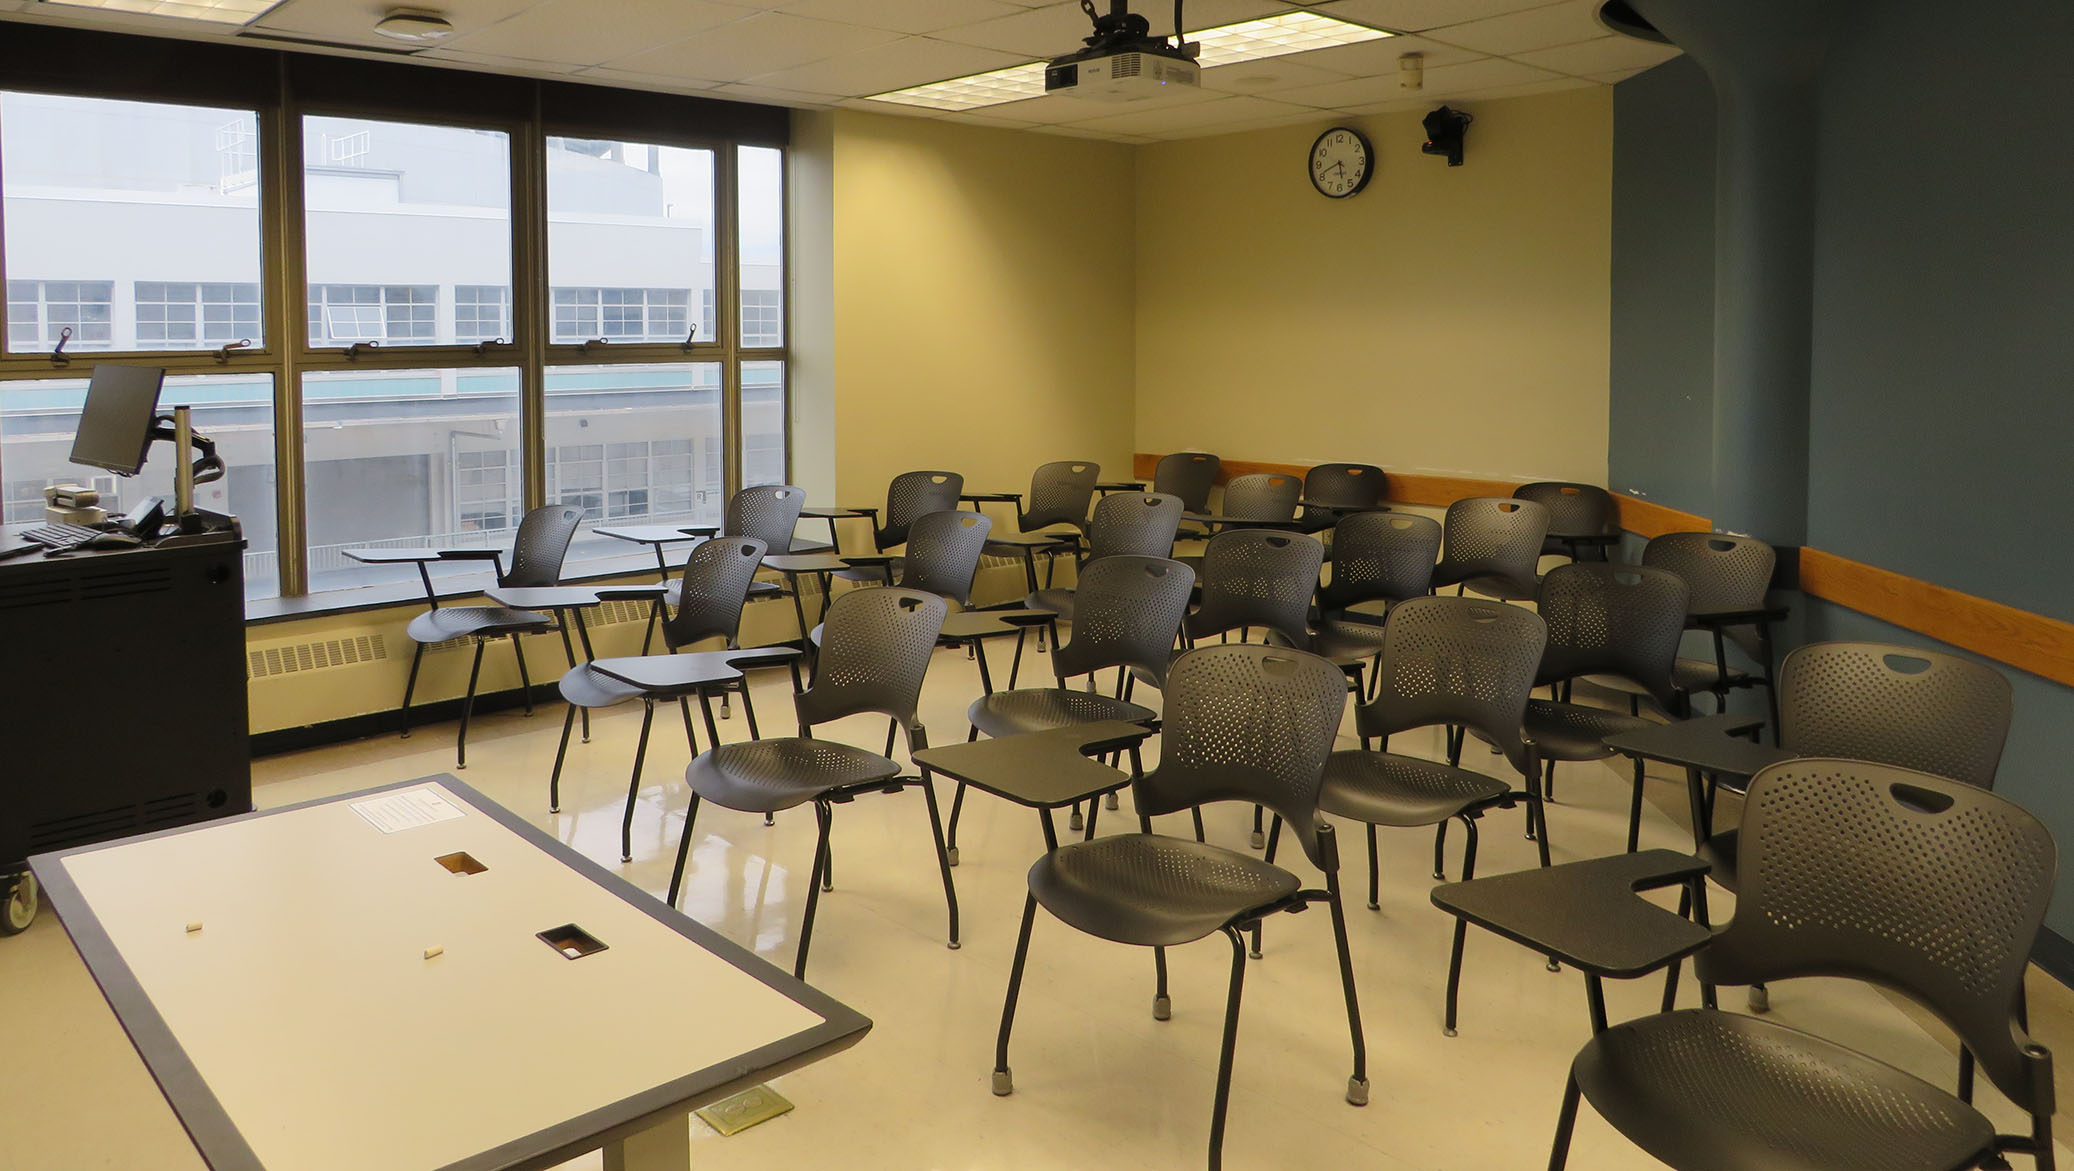 Enarson Classroom Building Room 238